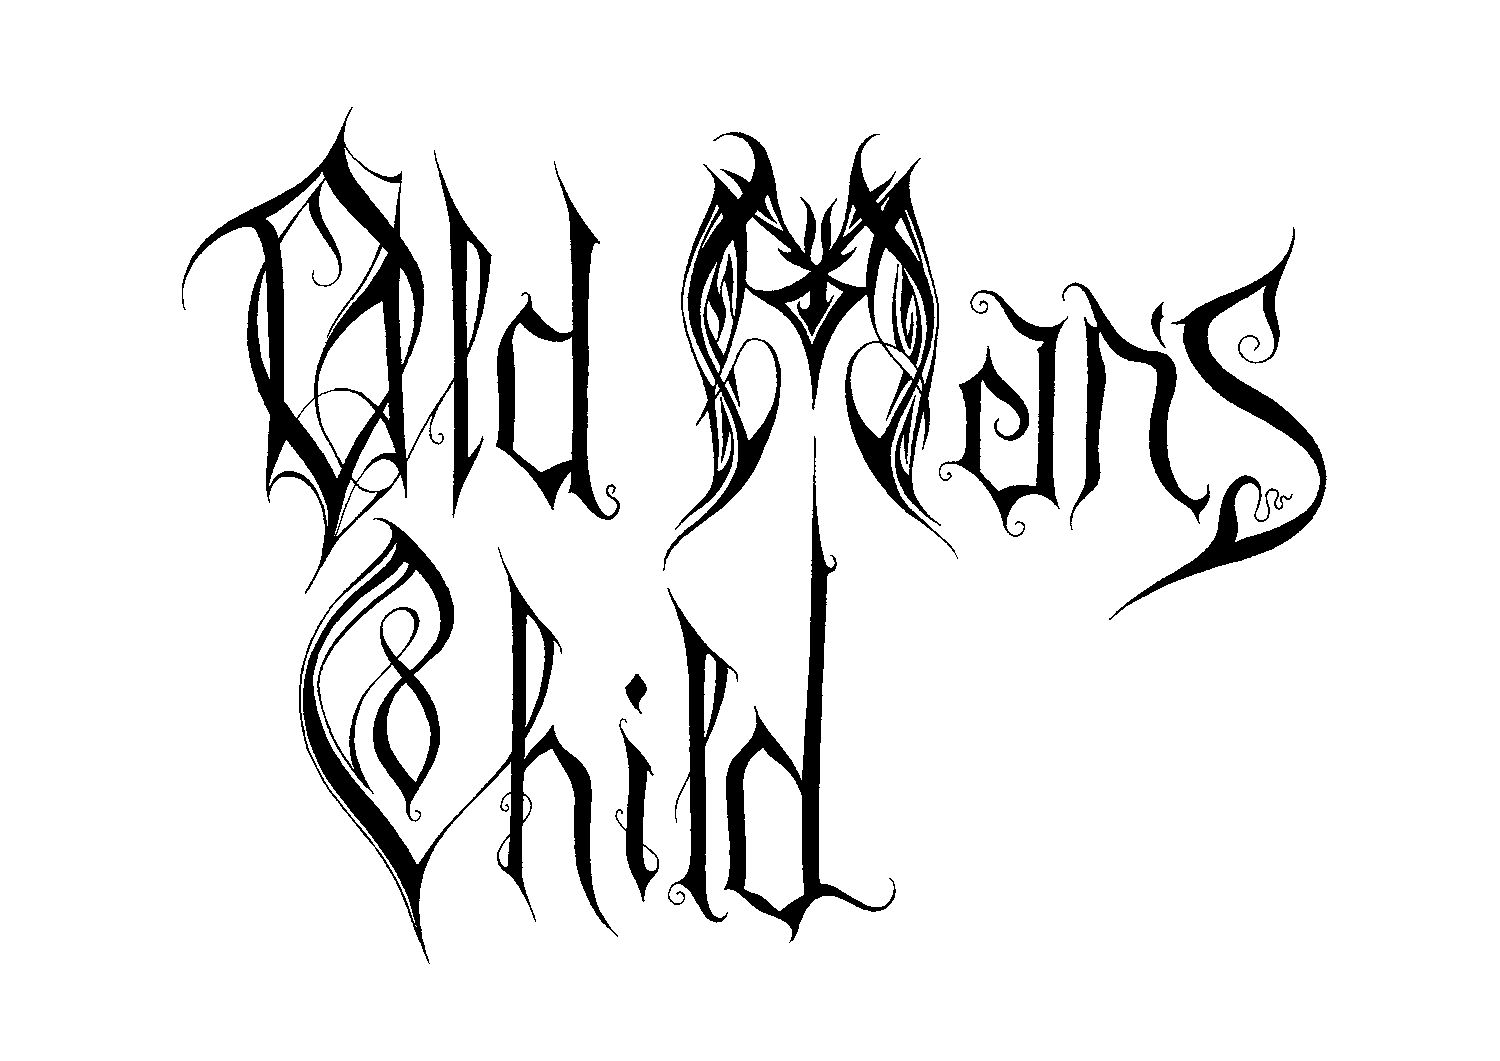 img/galleries/black-metal/Old-Mans-Child-(Norway).jpg